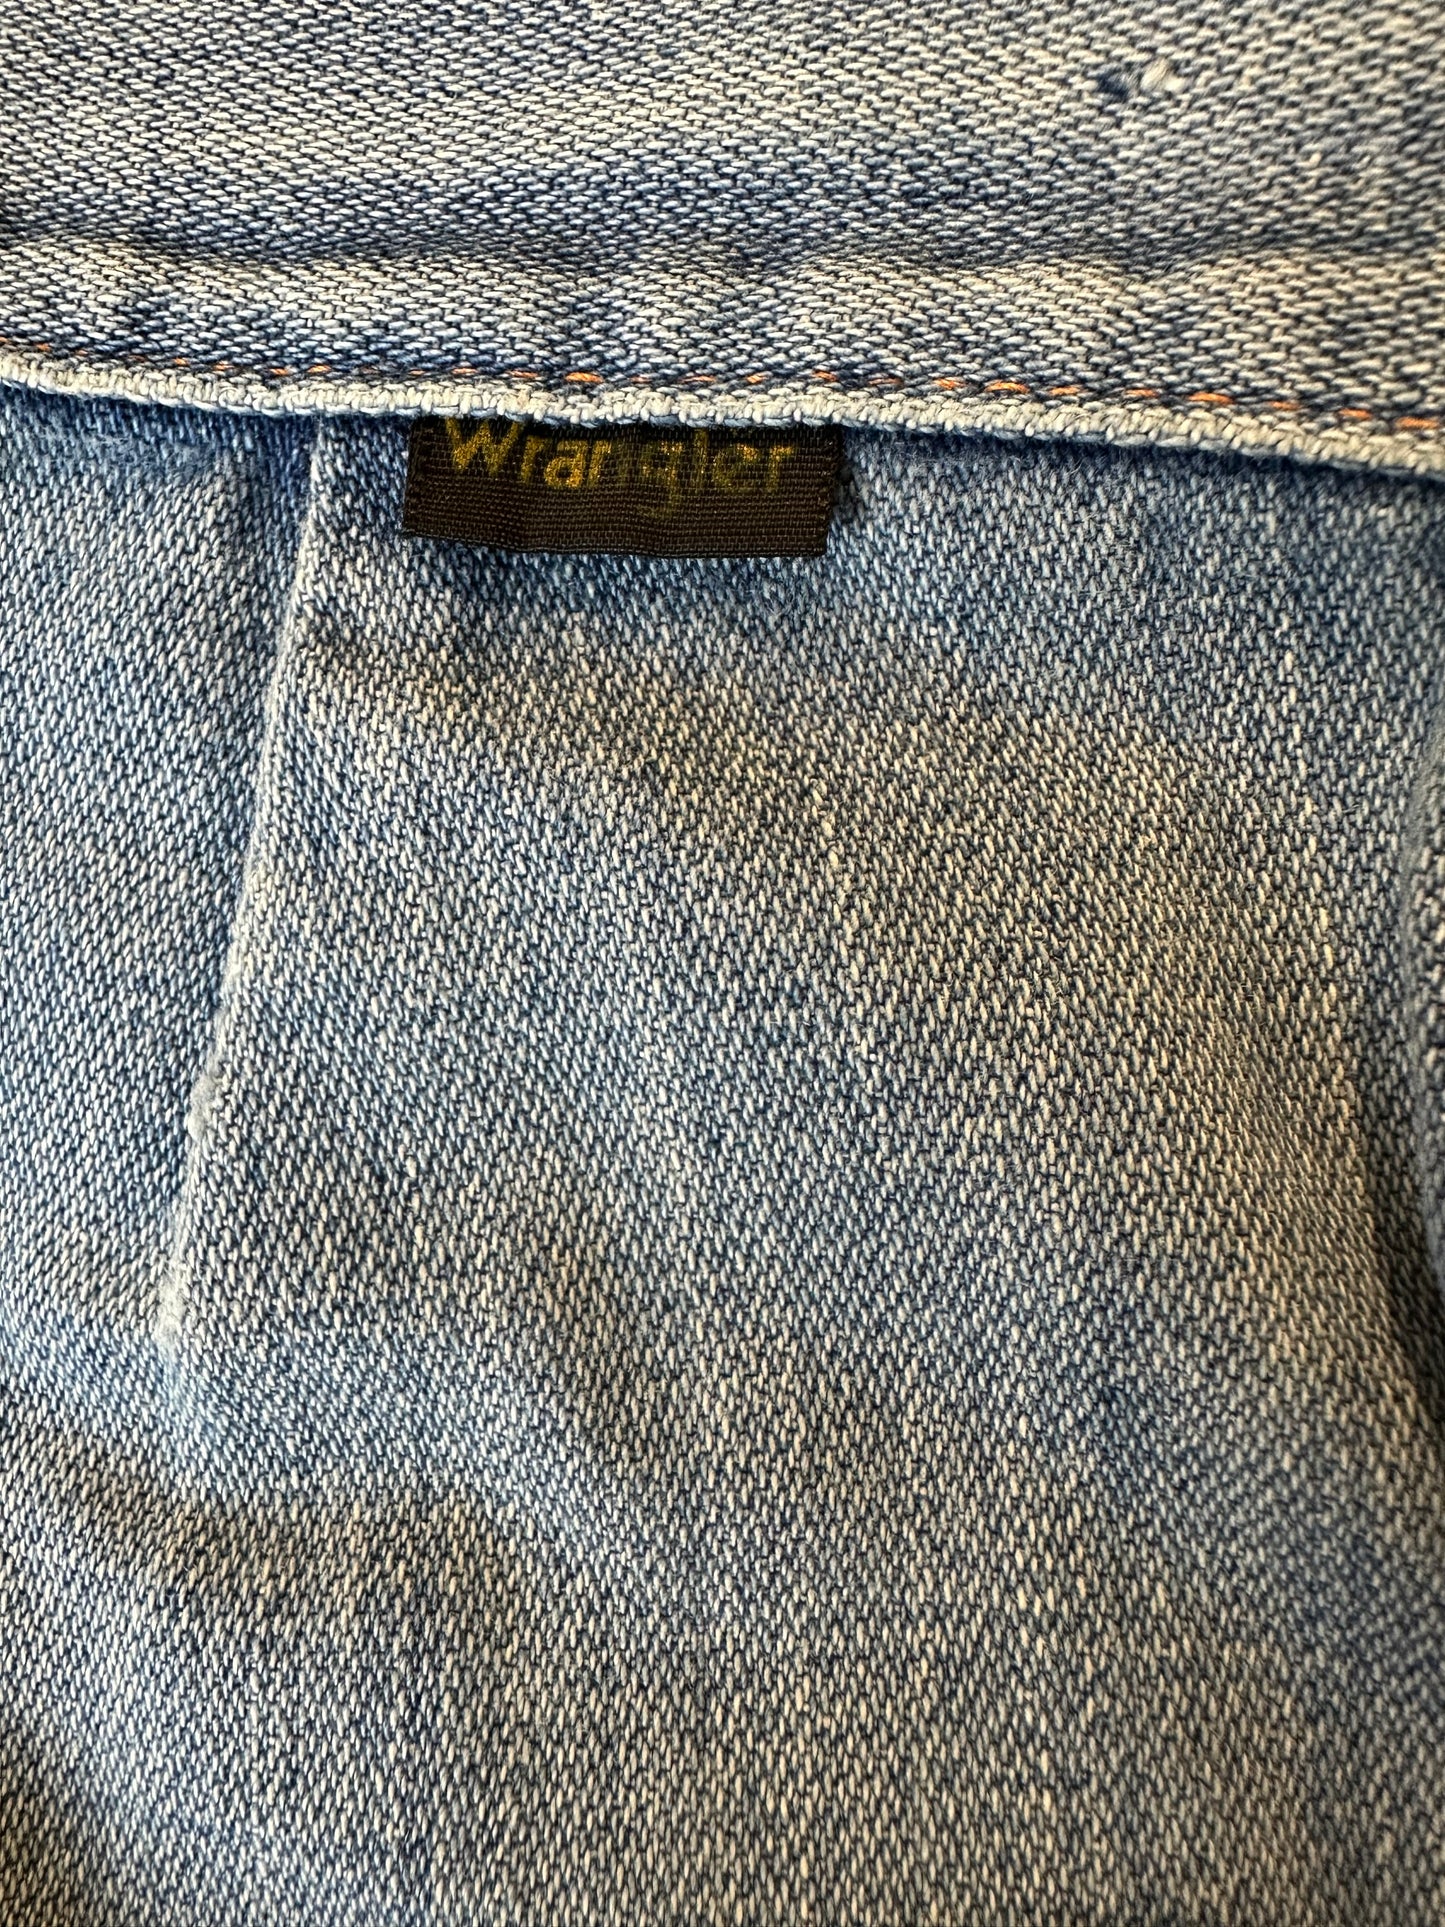 Vintage 'Wrangler' Bell Bottom Jeans / 29